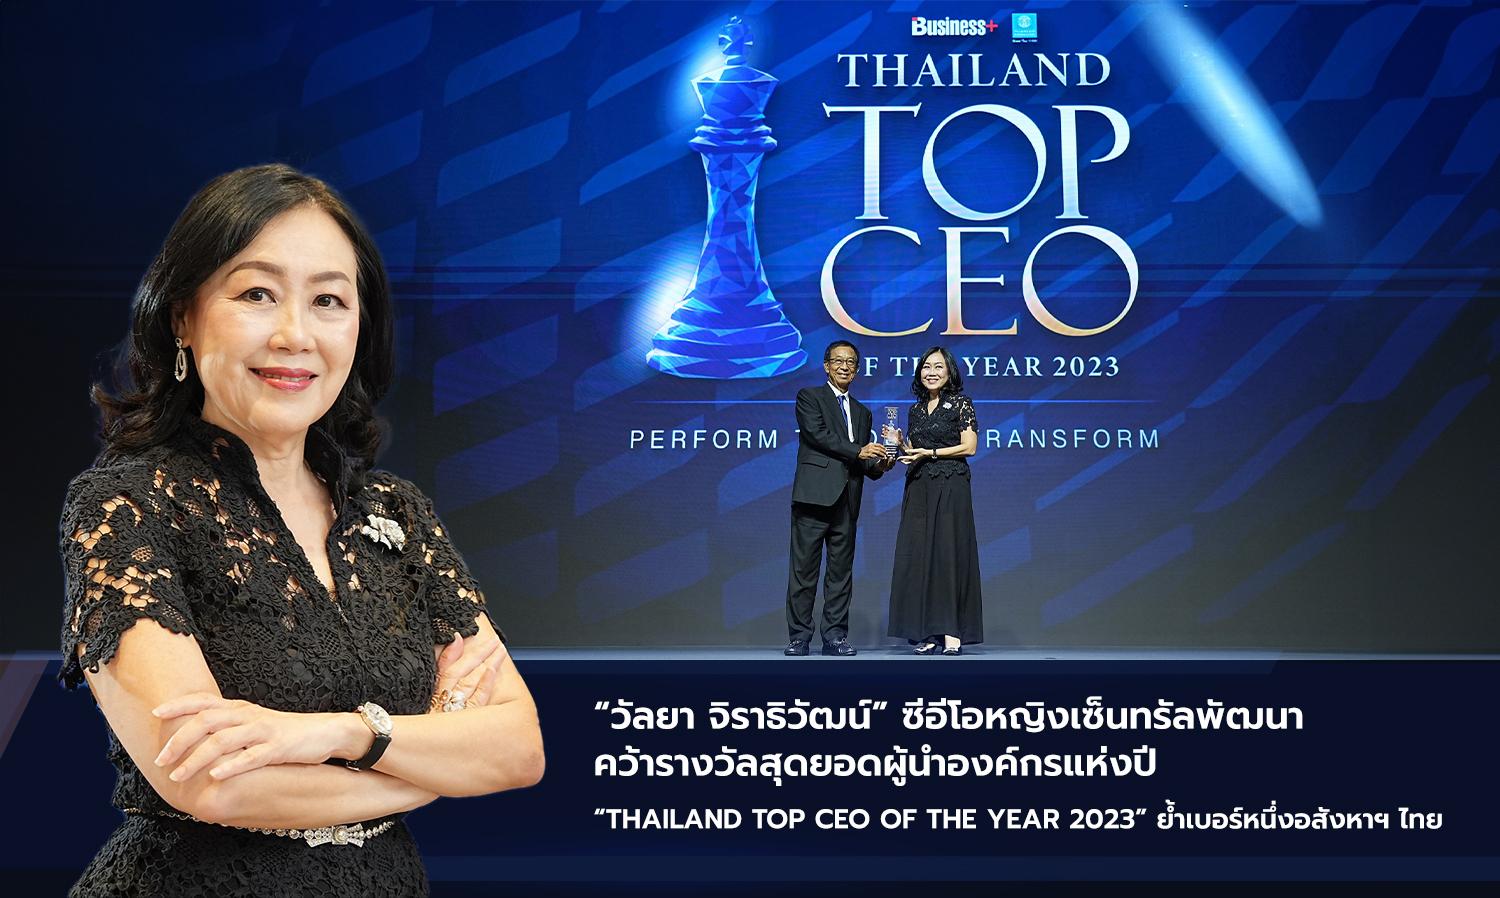 วัลยา จิราธิวัฒน์ ซีอีโอหญิงเซ็นทรัลพัฒนา คว้ารางวัลสุดยอดผู้นำองค์กรแห่งปี Thailand Top CEO of The Year 2023 ย้ำเบอร์หนึ่งอสังหาฯ ไทย ด้วยวิสัยทัศน์และ Ecosystem ที่แข็งแกร่ง